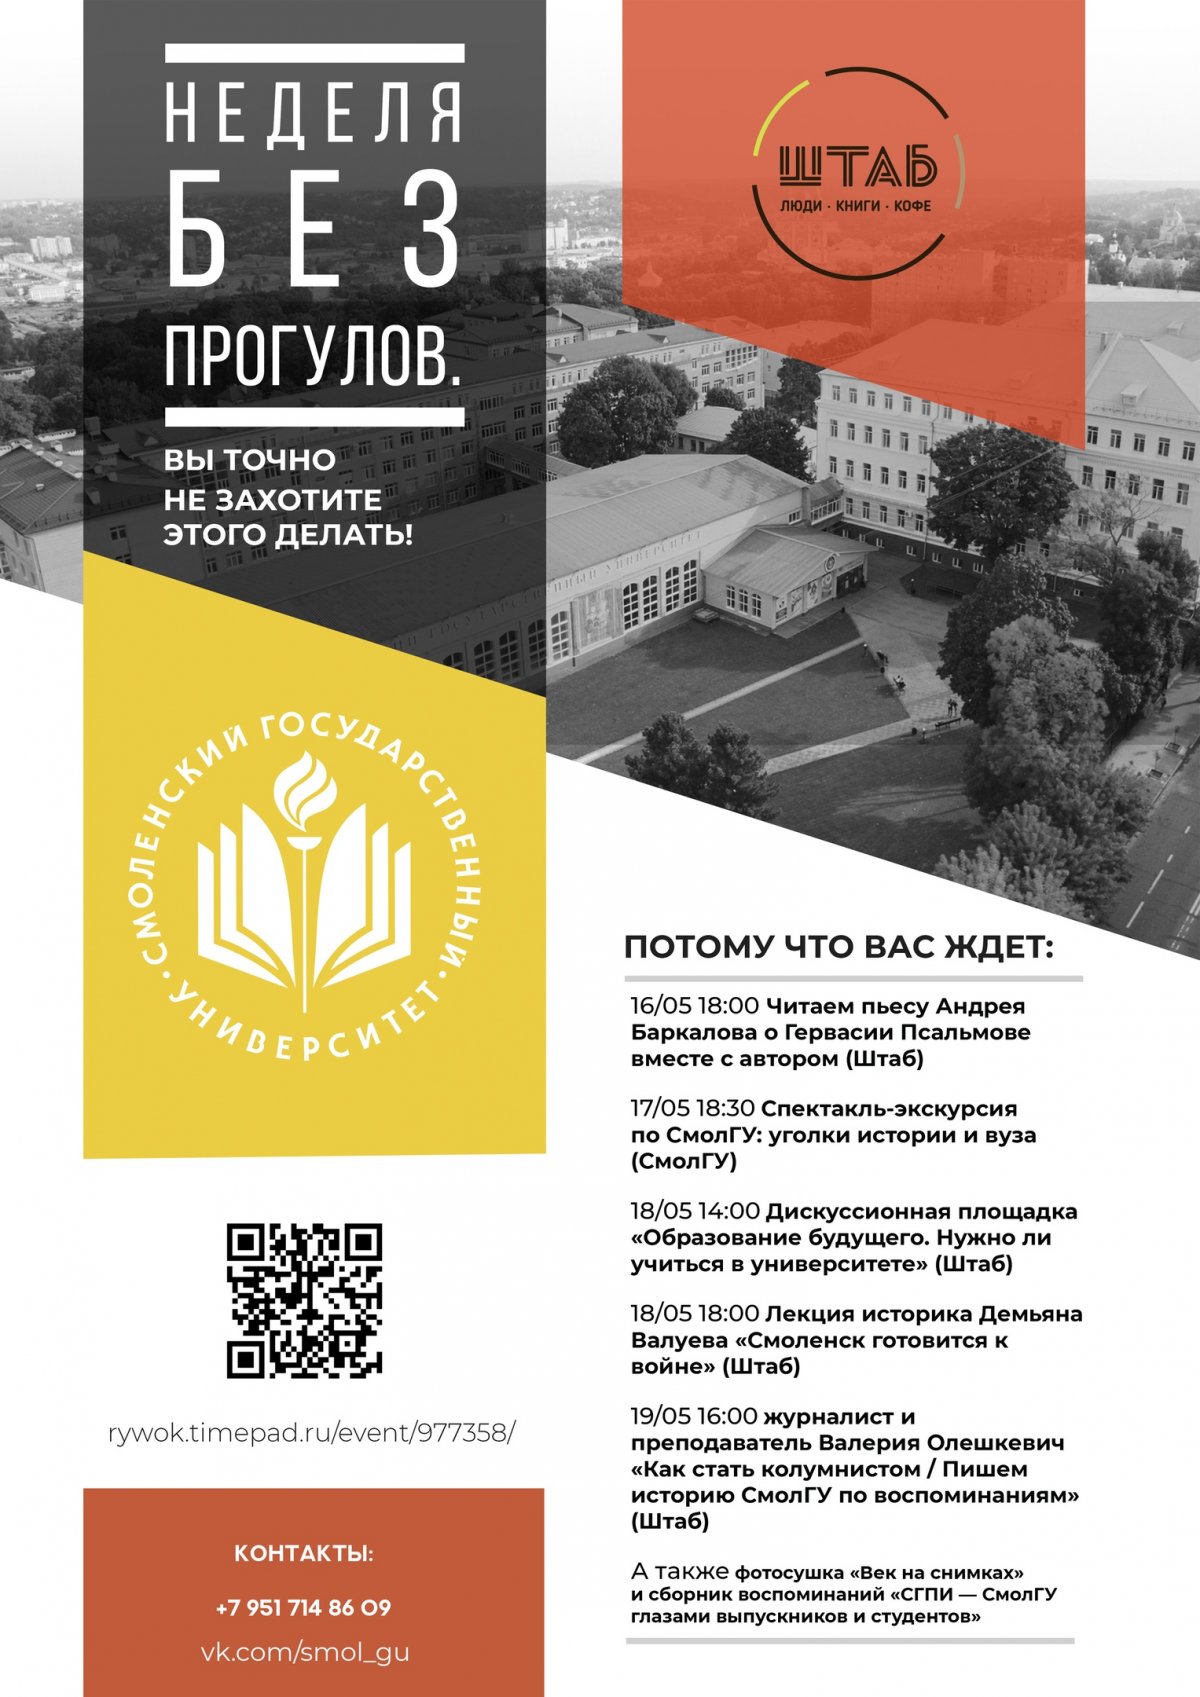 Неделя Смоленского государственного университета в "Штабе" объявляется открытой!